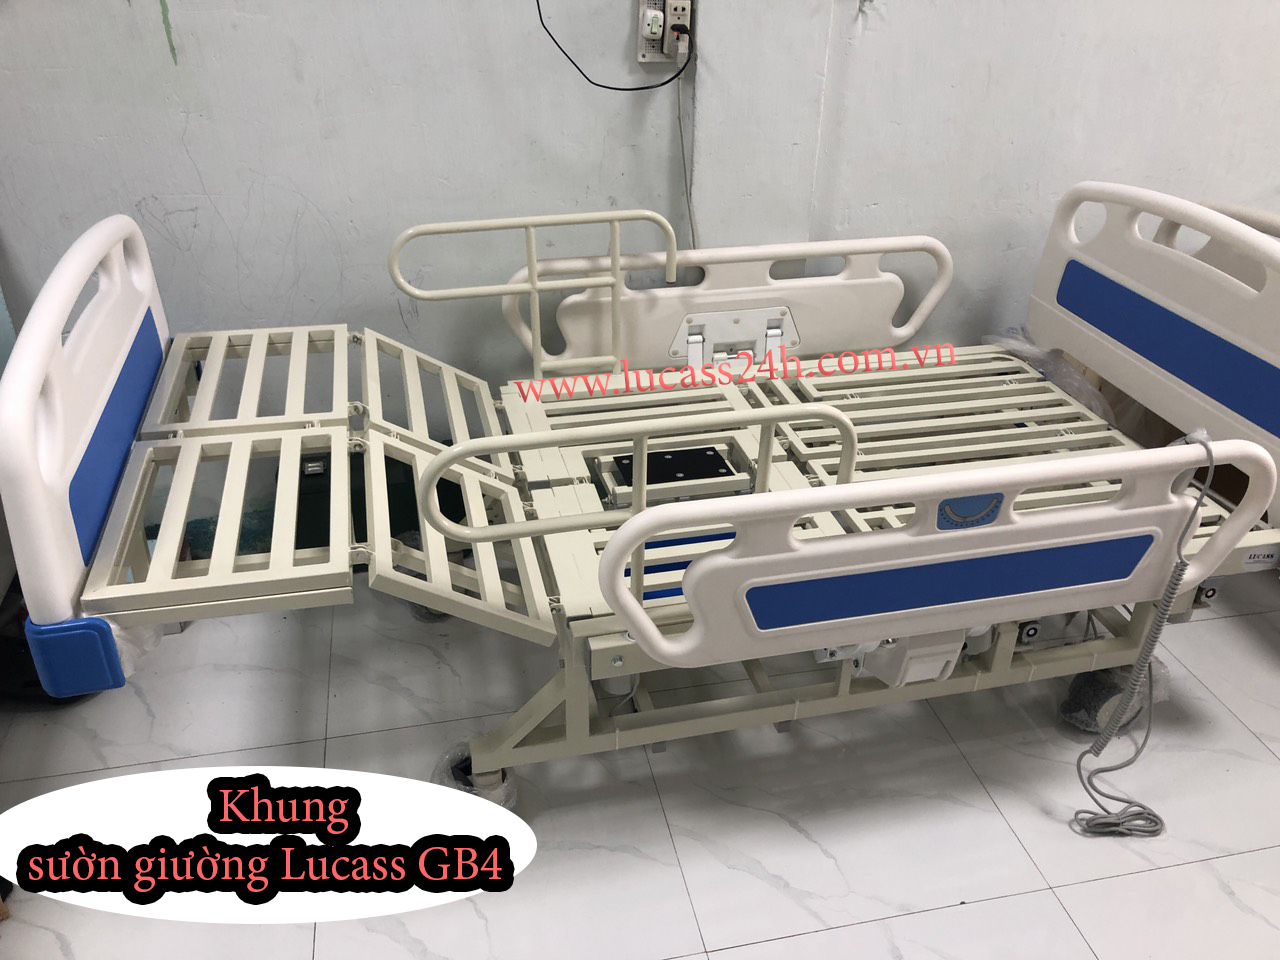 Cữa hàng giường y tế bệnh nhân ở Trà Vinh giá rẻ số 1 hiện nay